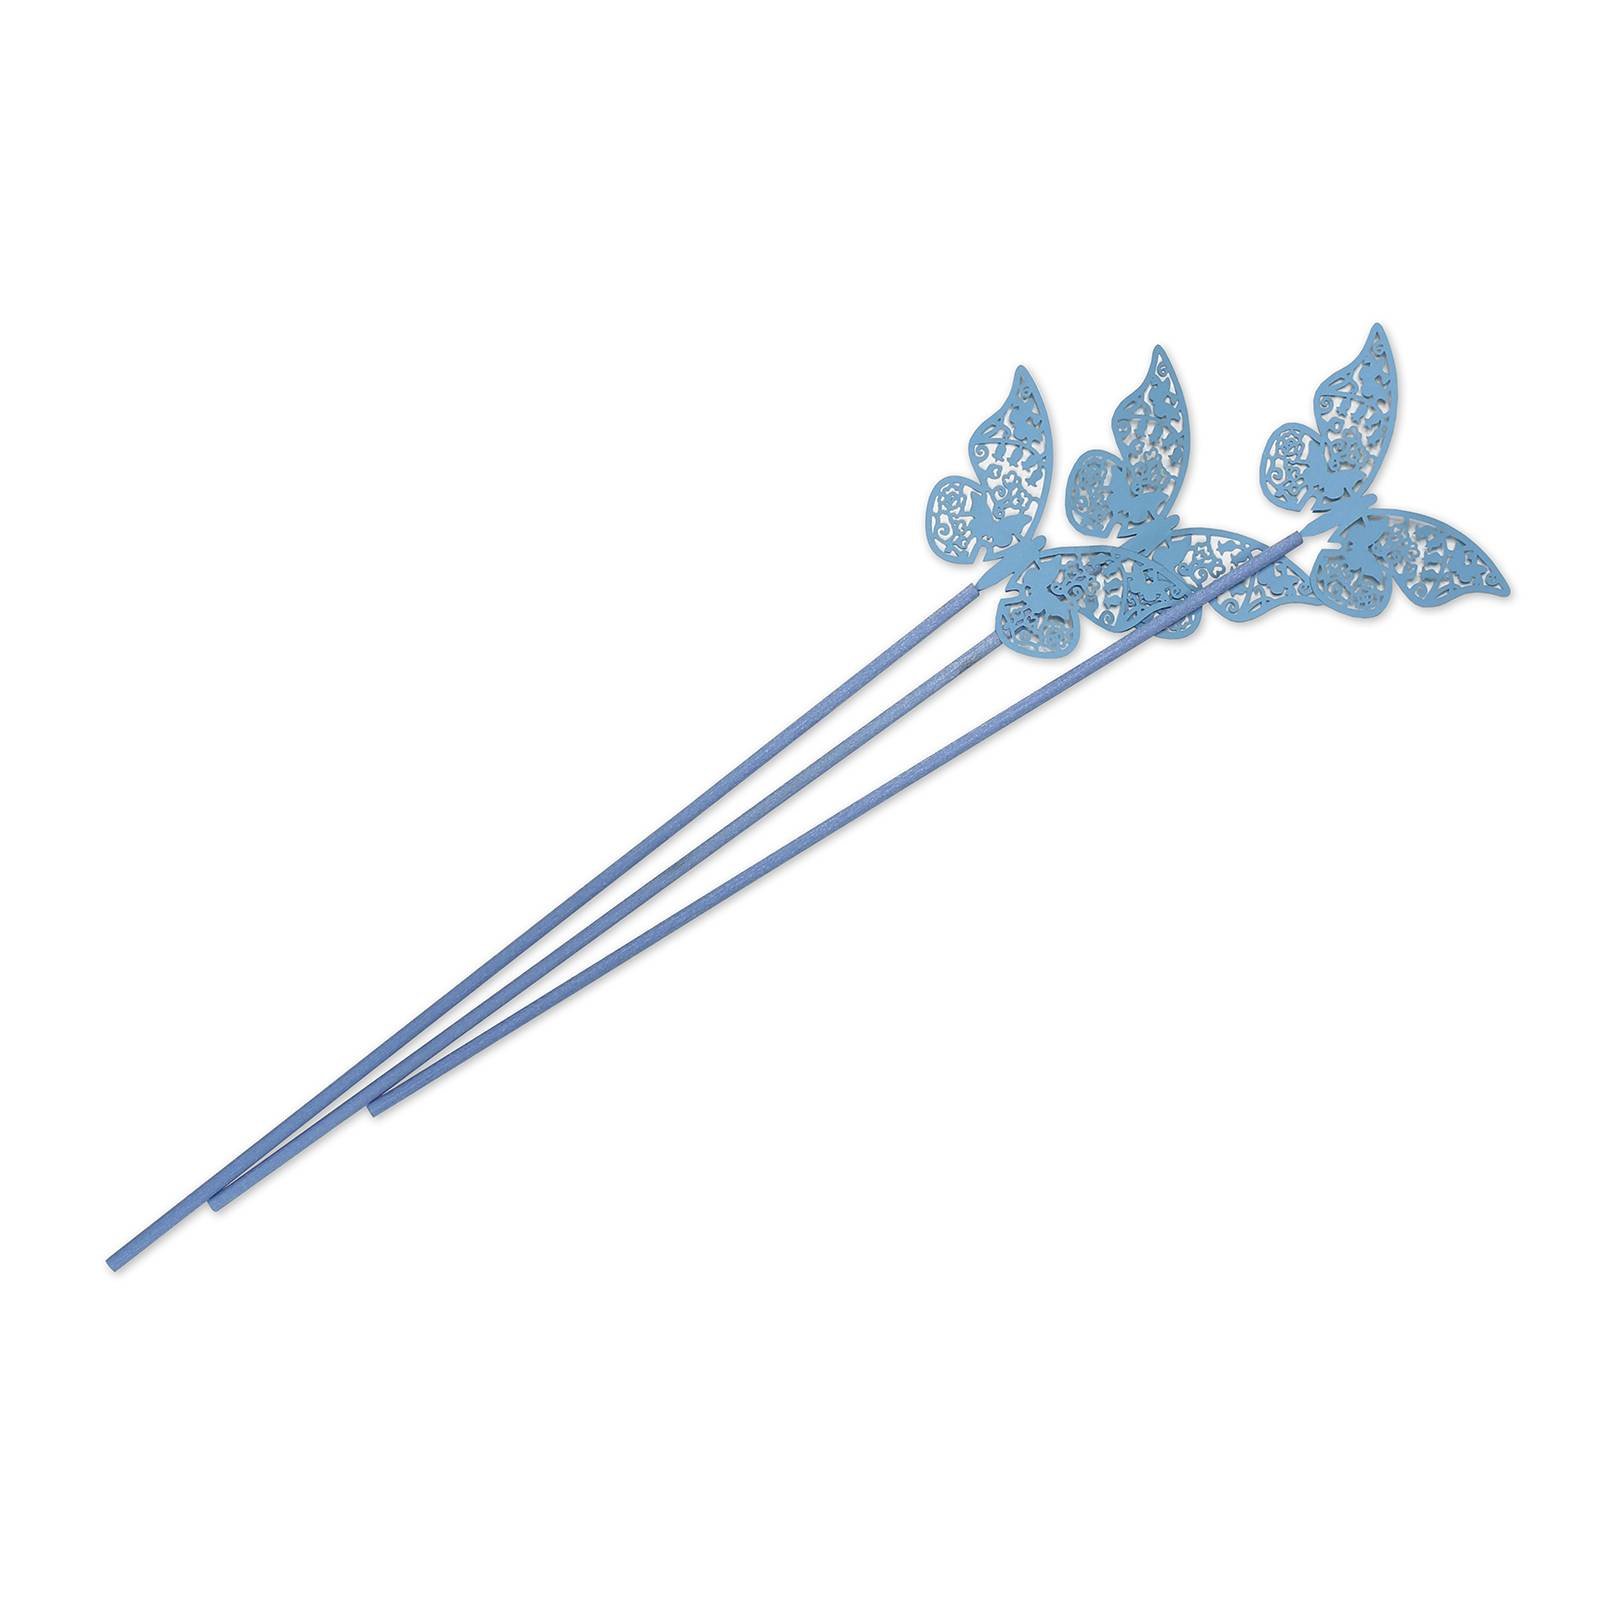 Fotografie Tyčinky do difuzéru, polyester, modré s motýlem, 3 ks, délka 28 cm